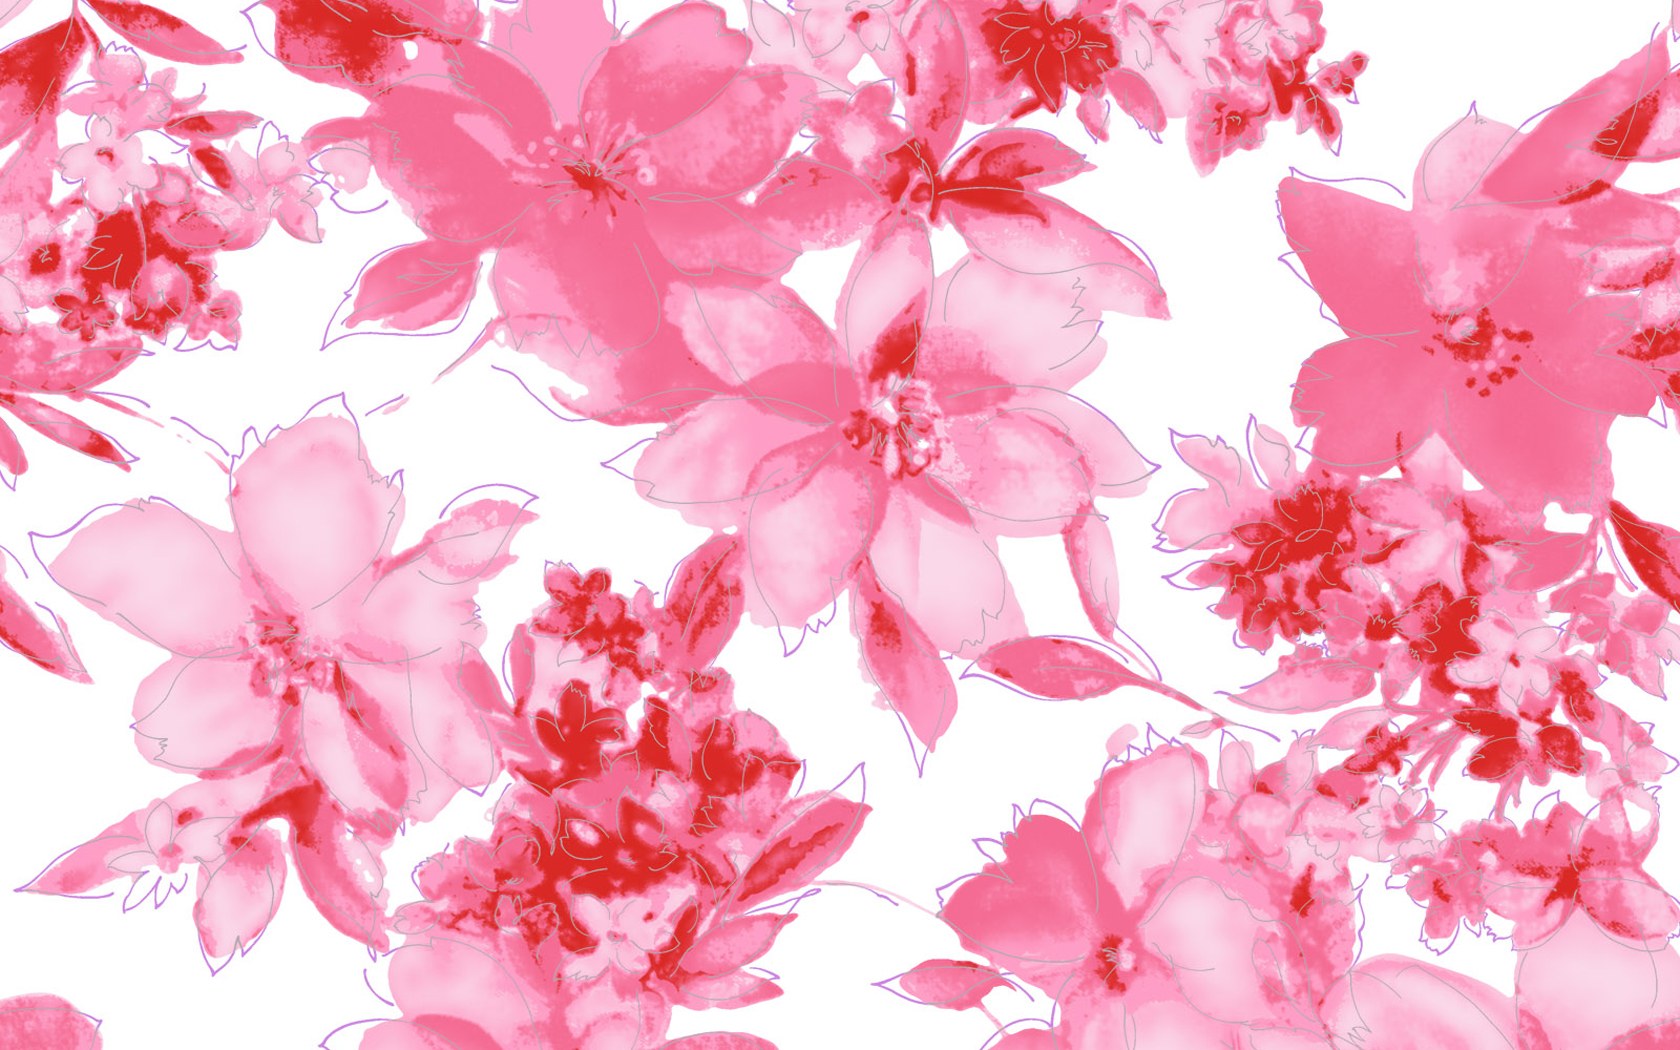 From Wallpaper Flower Pattern